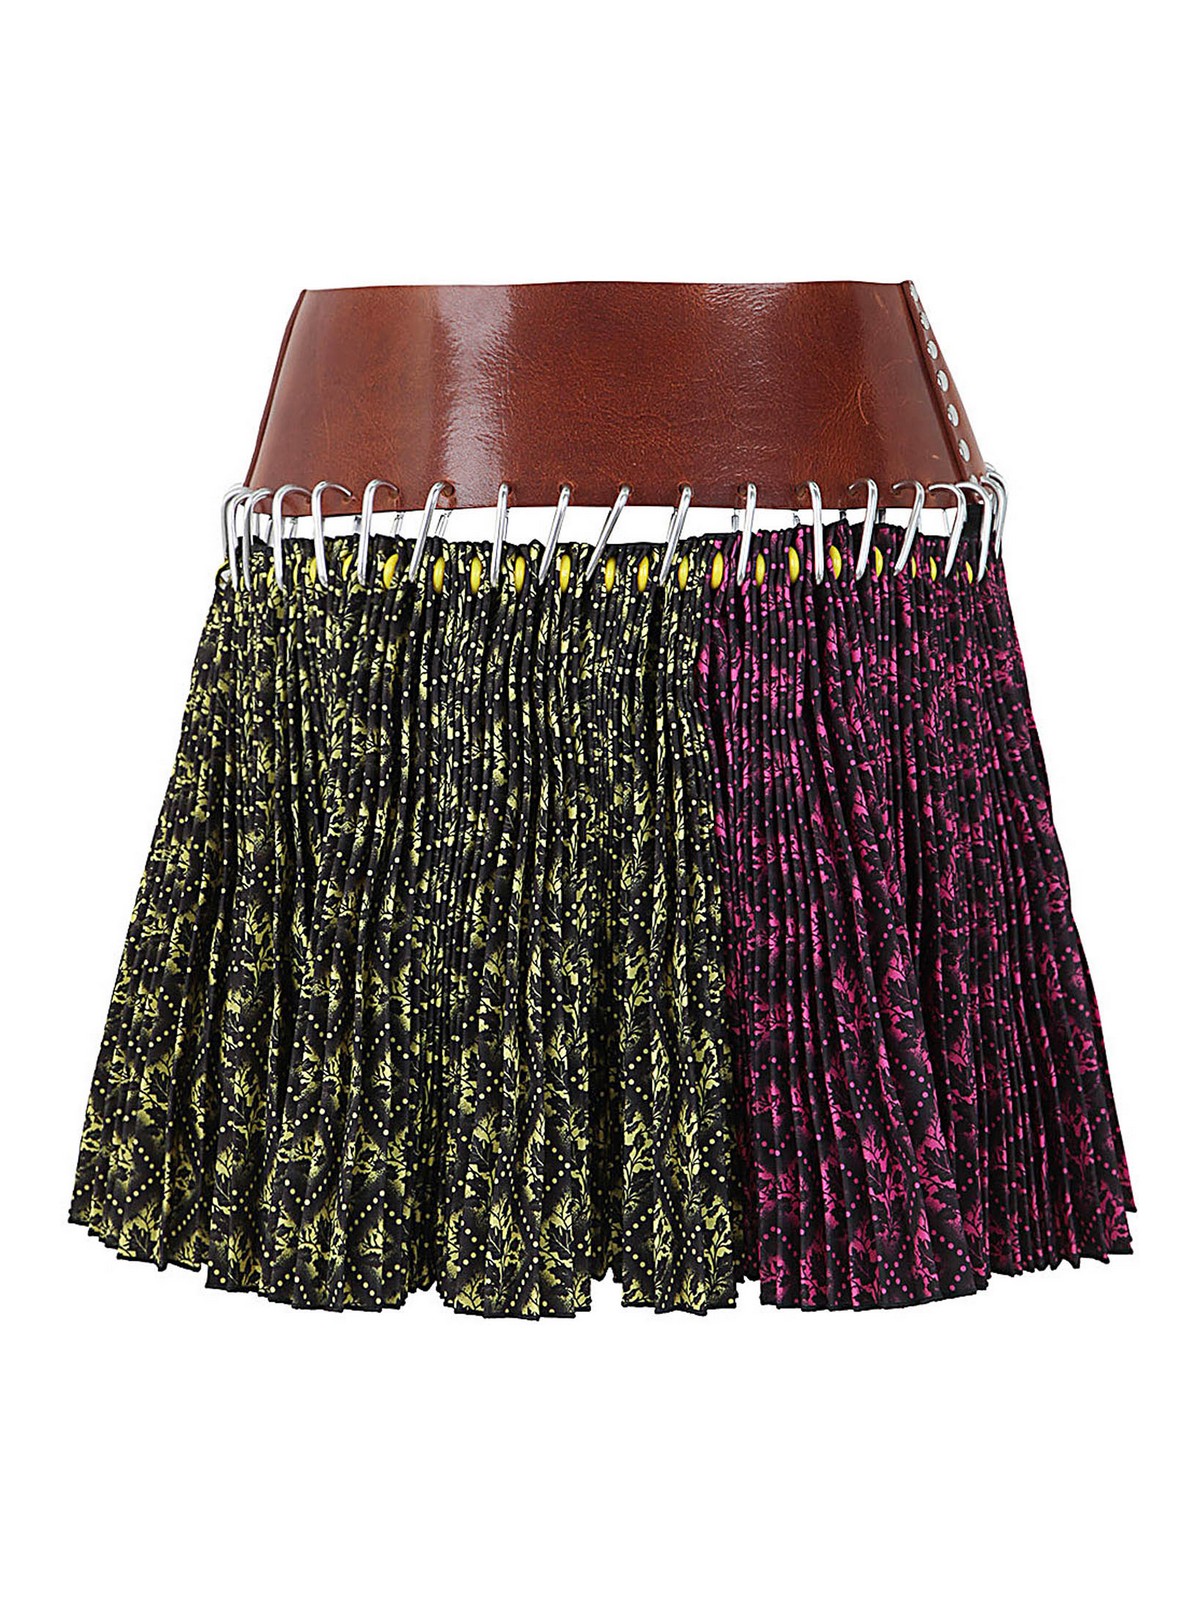 Mini skirts Chopova Lowena - Rock carabiner skirt - 3138PINK | iKRIX.com